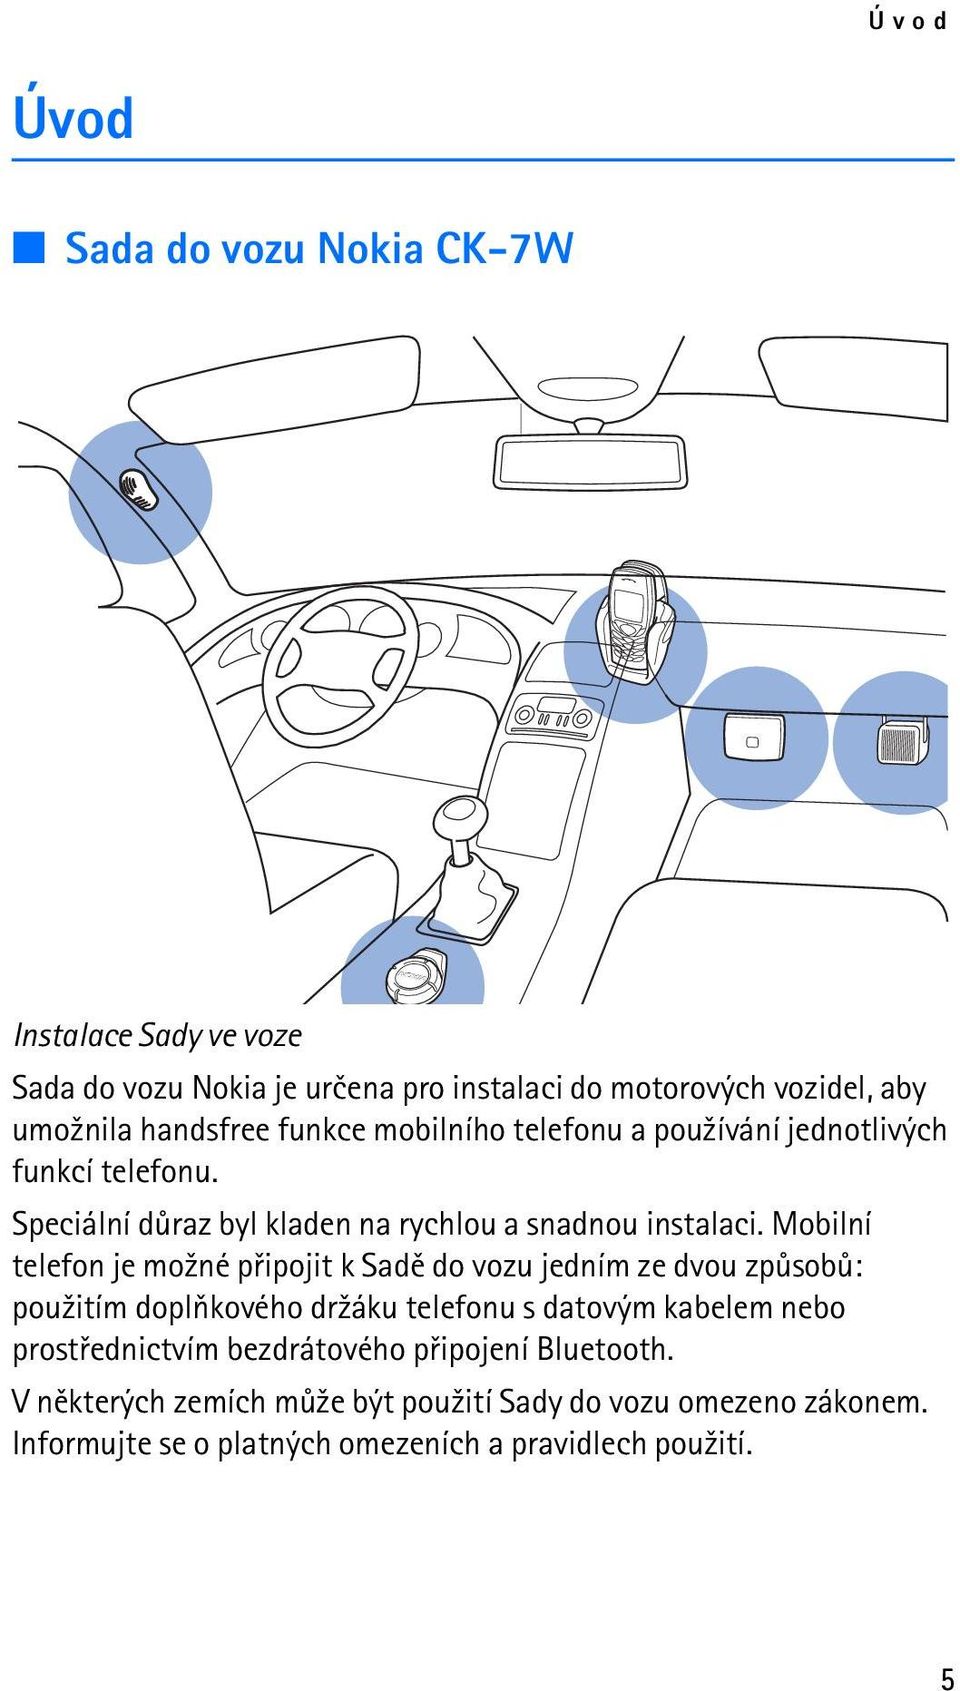 Mobilní telefon je mo¾né pøipojit k Sadì do vozu jedním ze dvou zpùsobù: pou¾itím doplòkového dr¾áku telefonu s datovým kabelem nebo